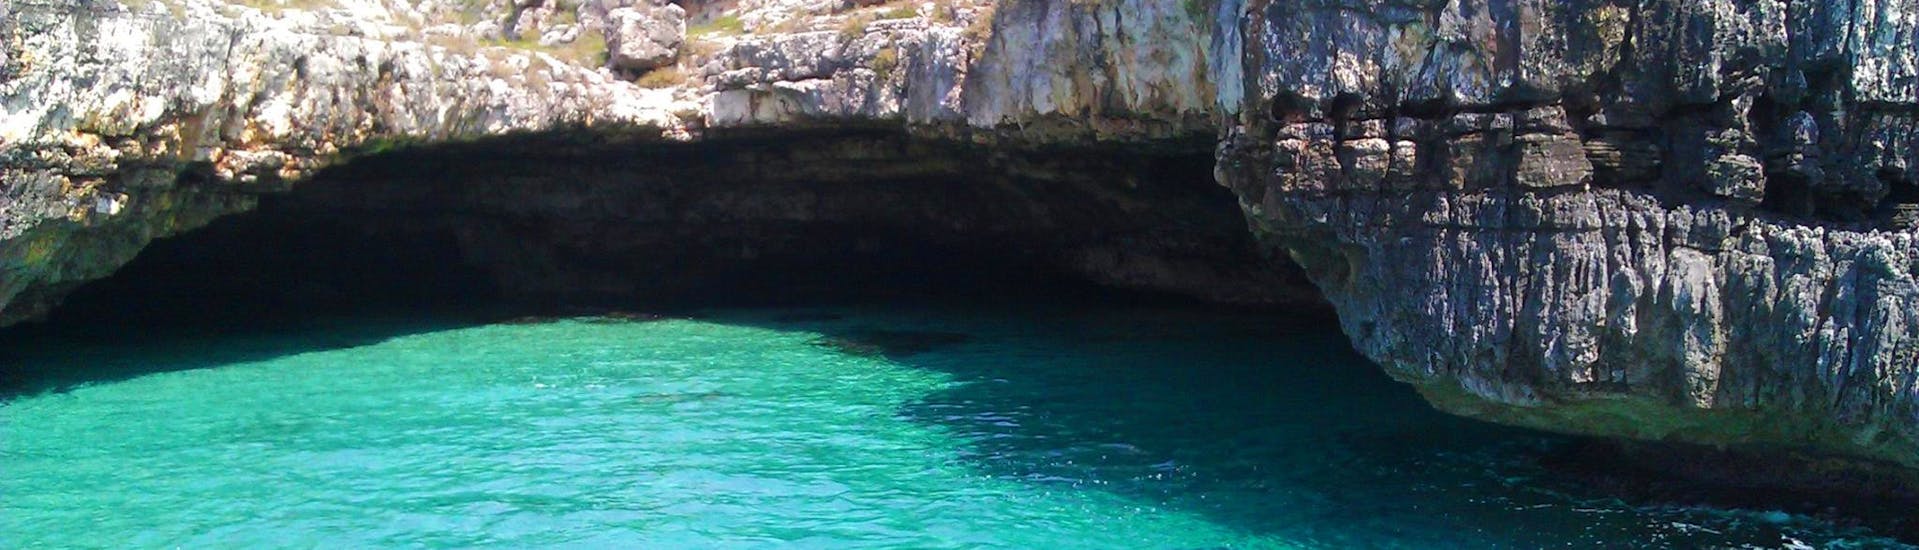 Une des grottes que vous pouvez visiter en louant un bateau pneumatique à Torre Vado (jusqu'à 16 personnes) avec Escursioni La Torre.